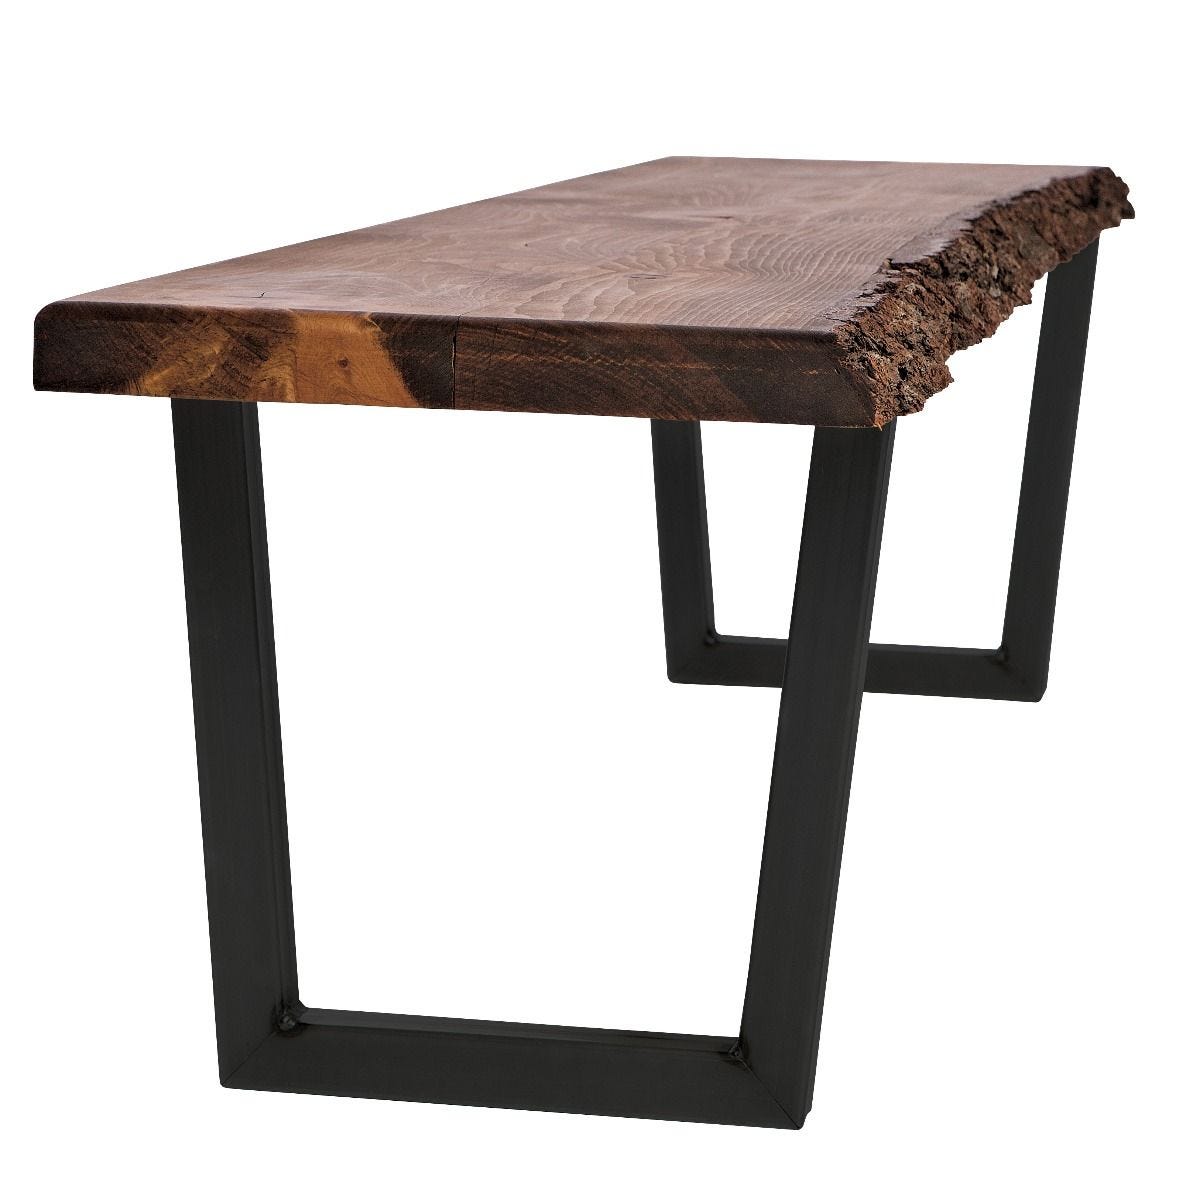 V-Shaped-Welded-Steel-Table-Leg-Set- Rockler